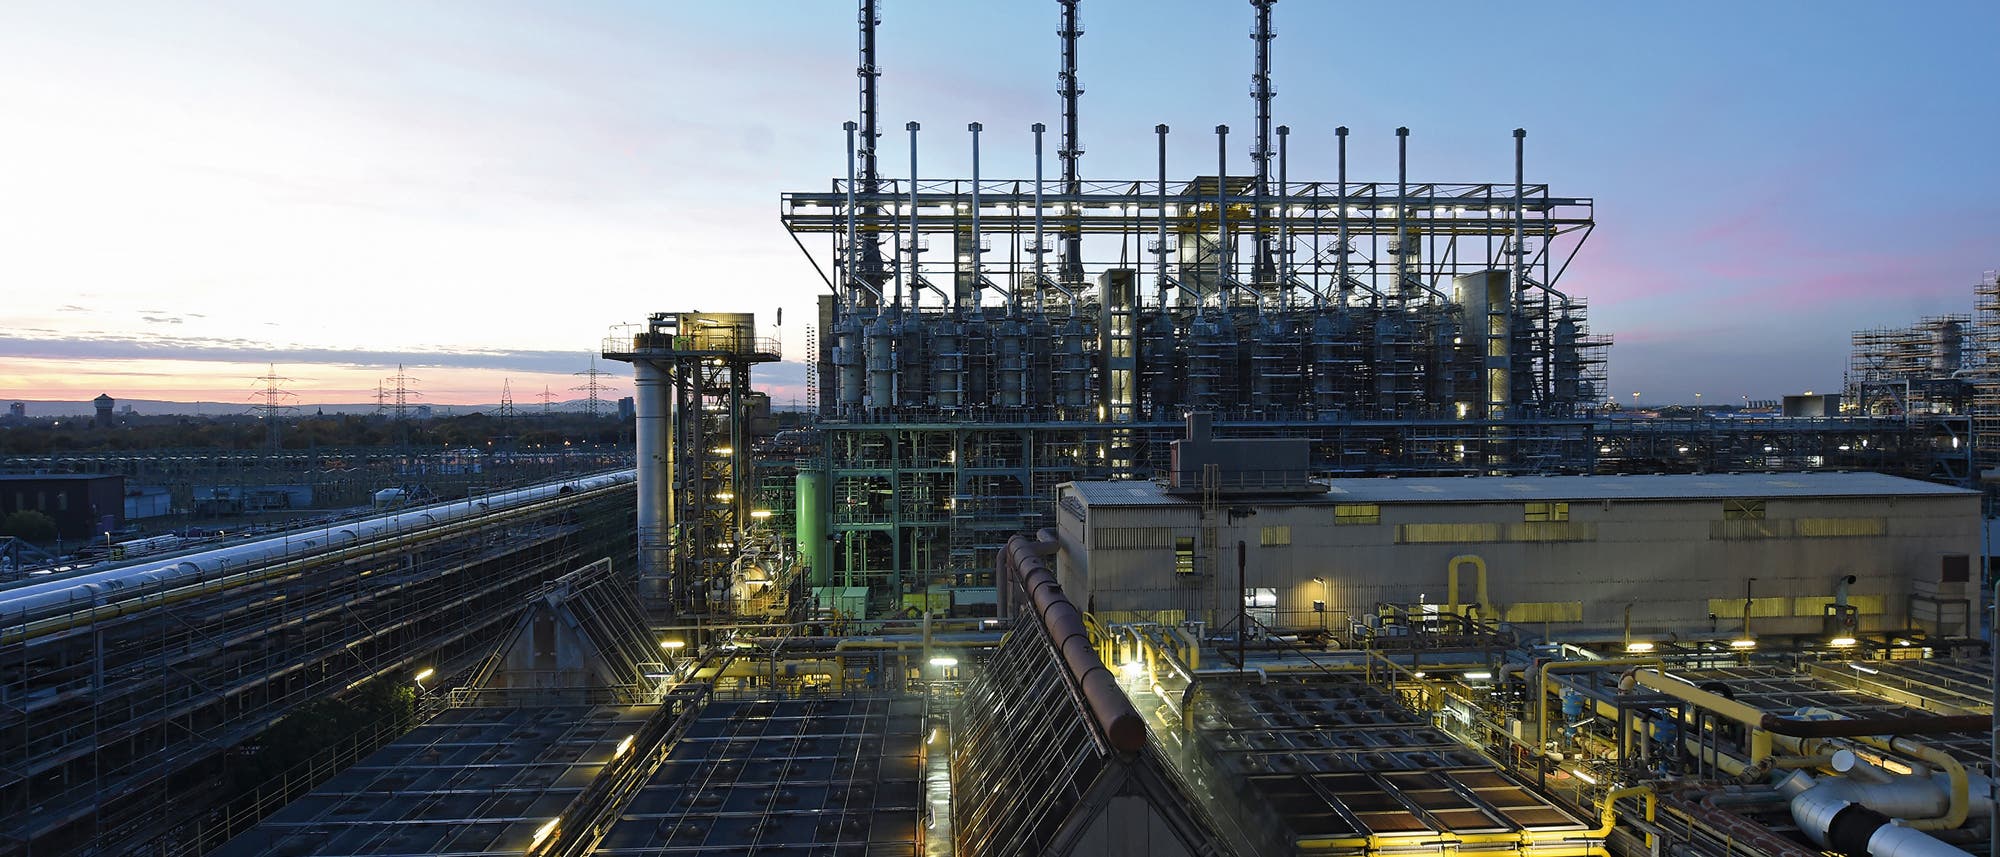 Blick auf die Ammoniakanlage der BASF Ludwigshafen bei einbrechender Dunkelheit